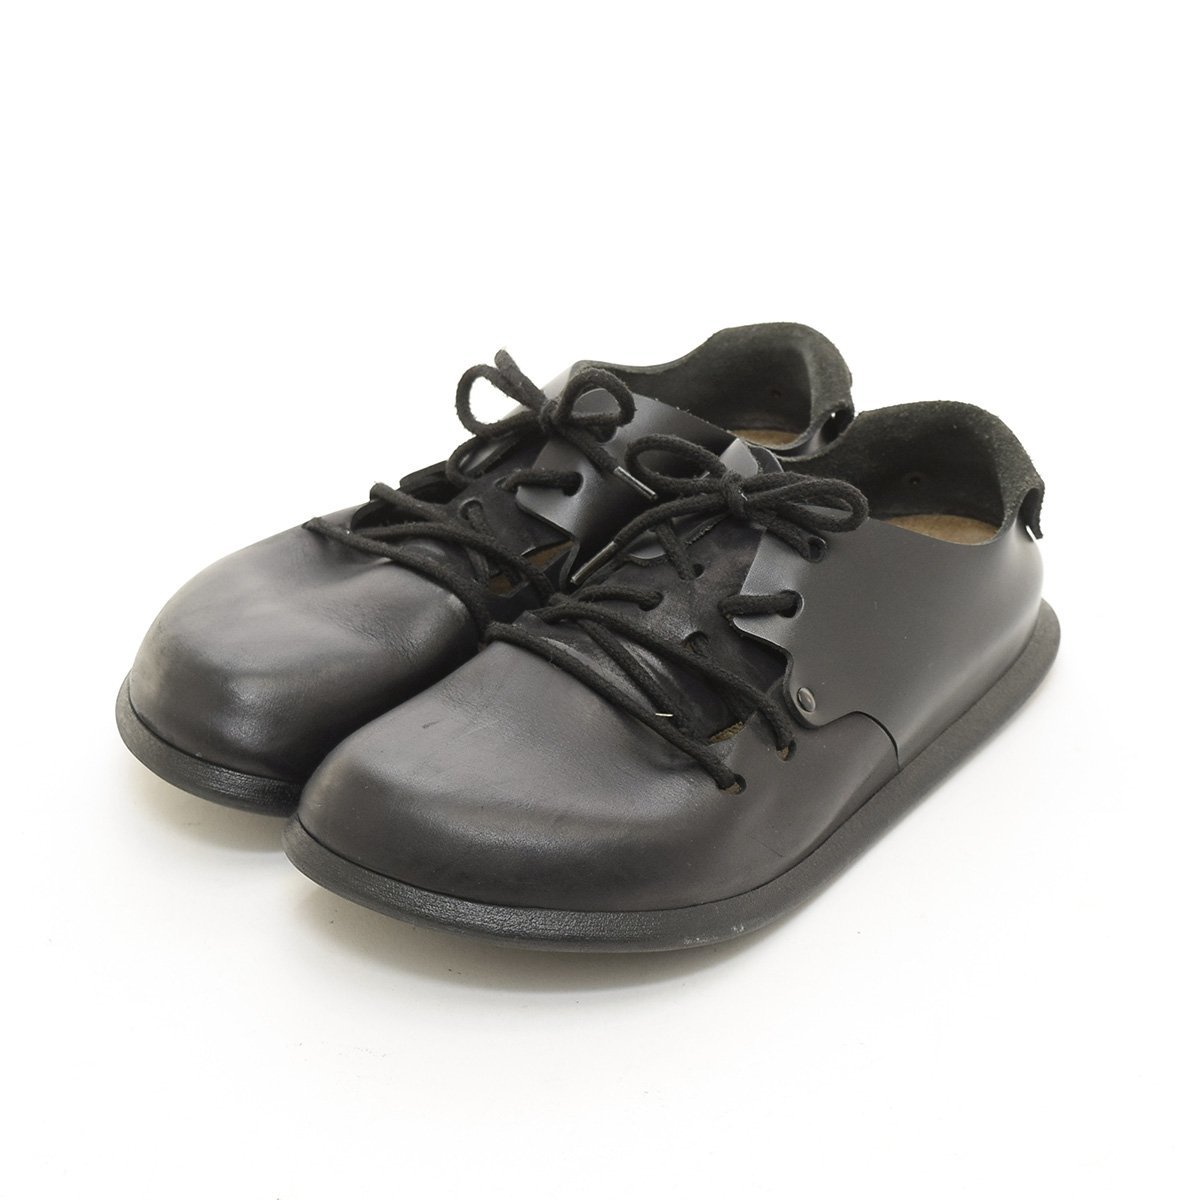 ◆501032 BIRKENSTOCK ビルケンシュトック ◆レザーサンダル 革靴 MONTANA モンタナ サイズ39/25.0cm相当 メンズ ブラック